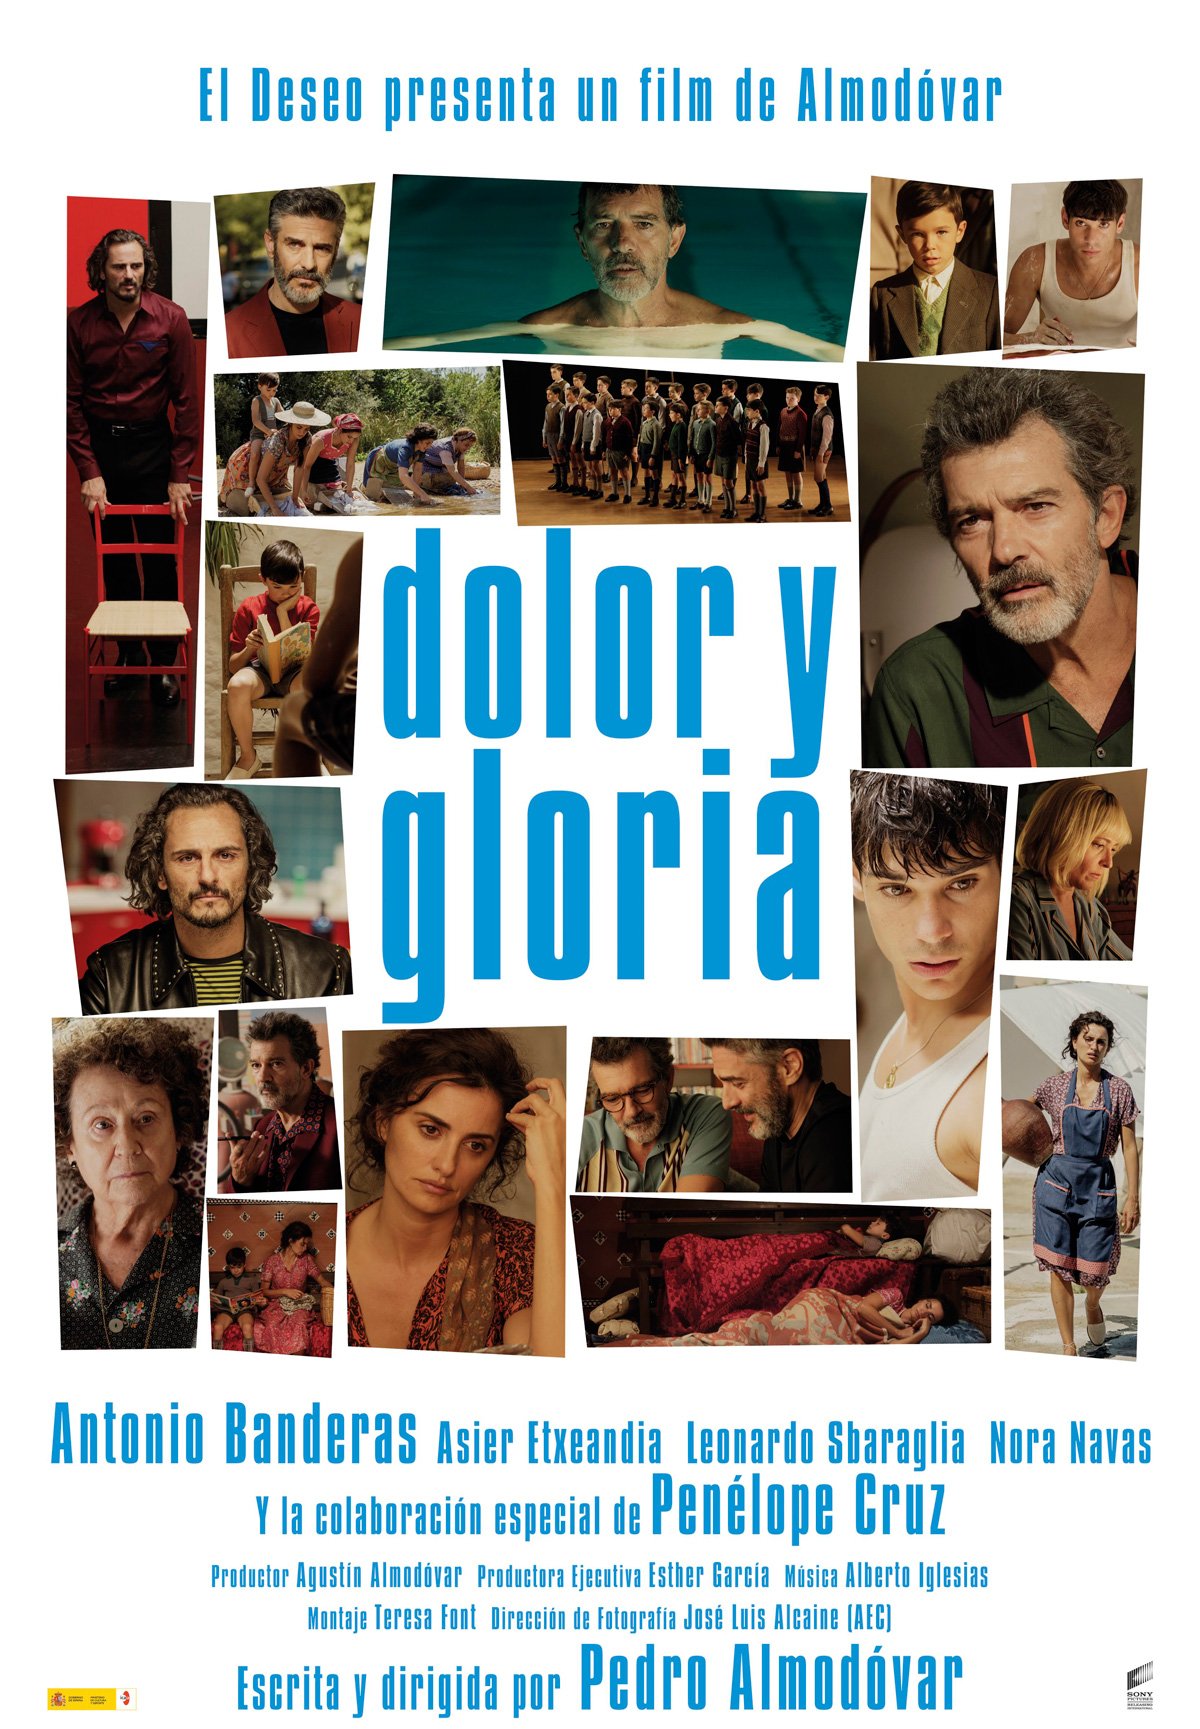 Película “Dolor y gloria” de Pedro Almodóvar, ganadora de los Premios Platino Xcaret